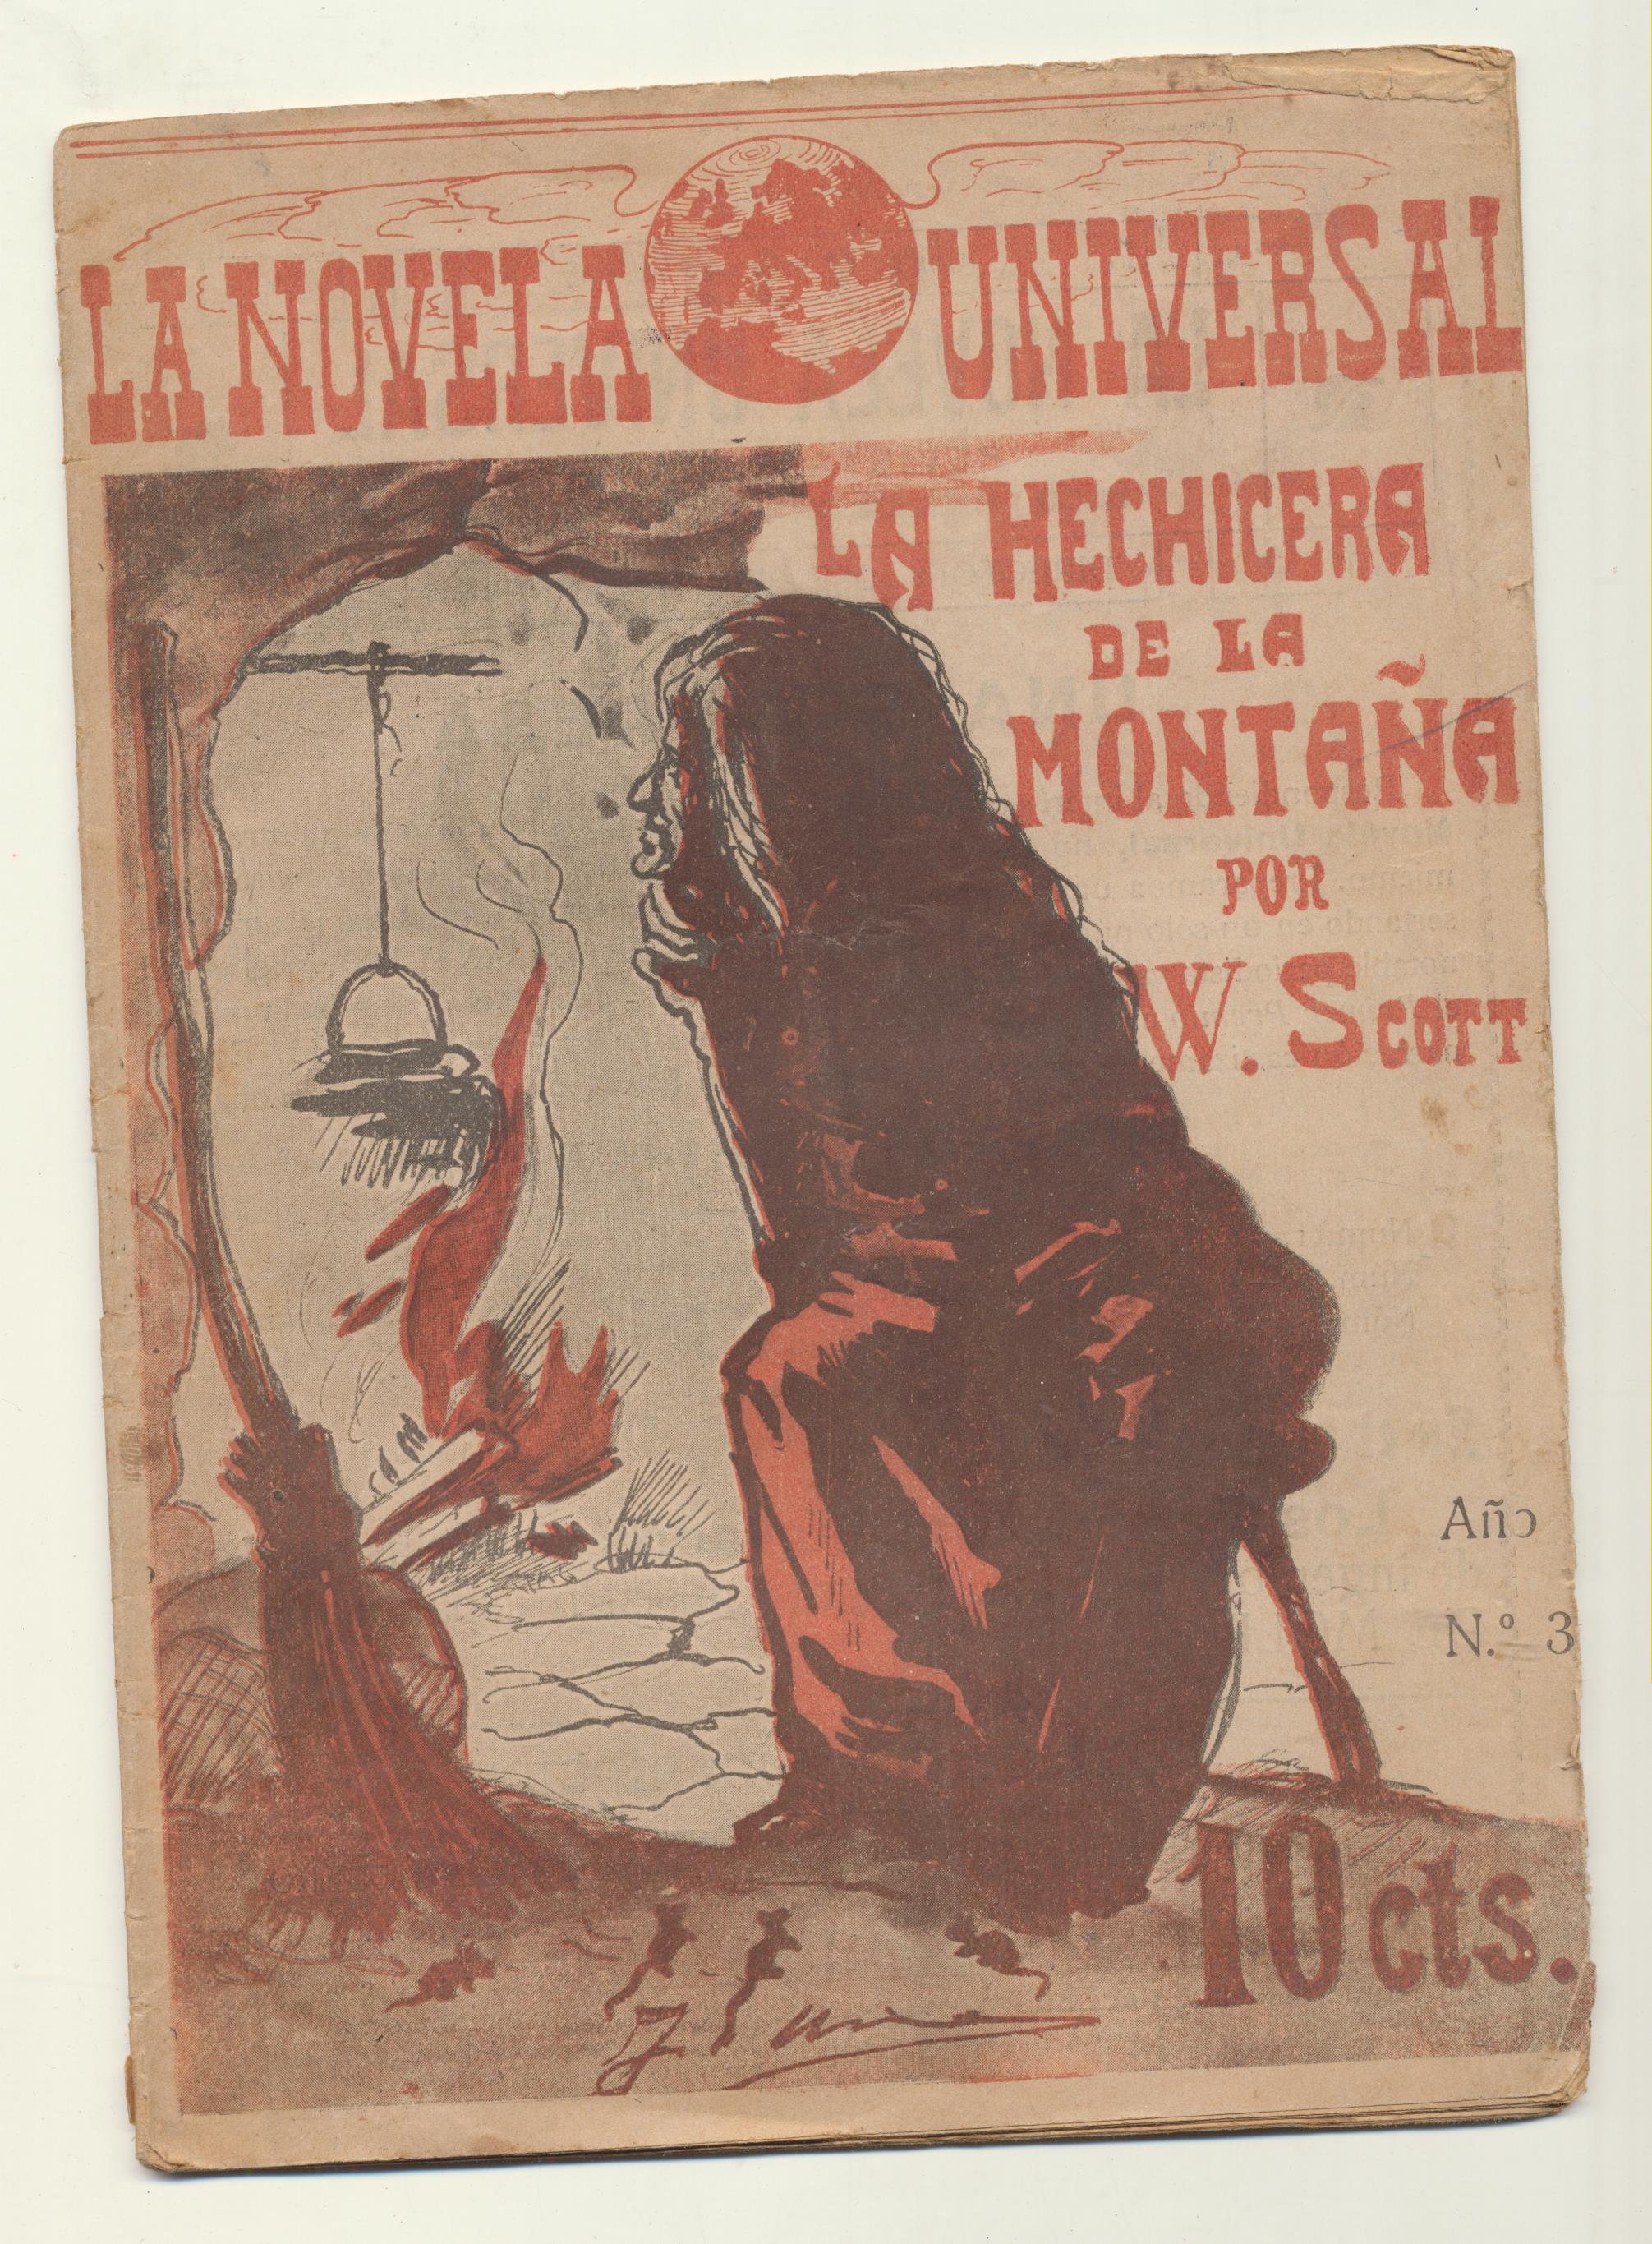 La Novela Universal nº 3. W. Scott La hechicera de la Montaña. Año 1917